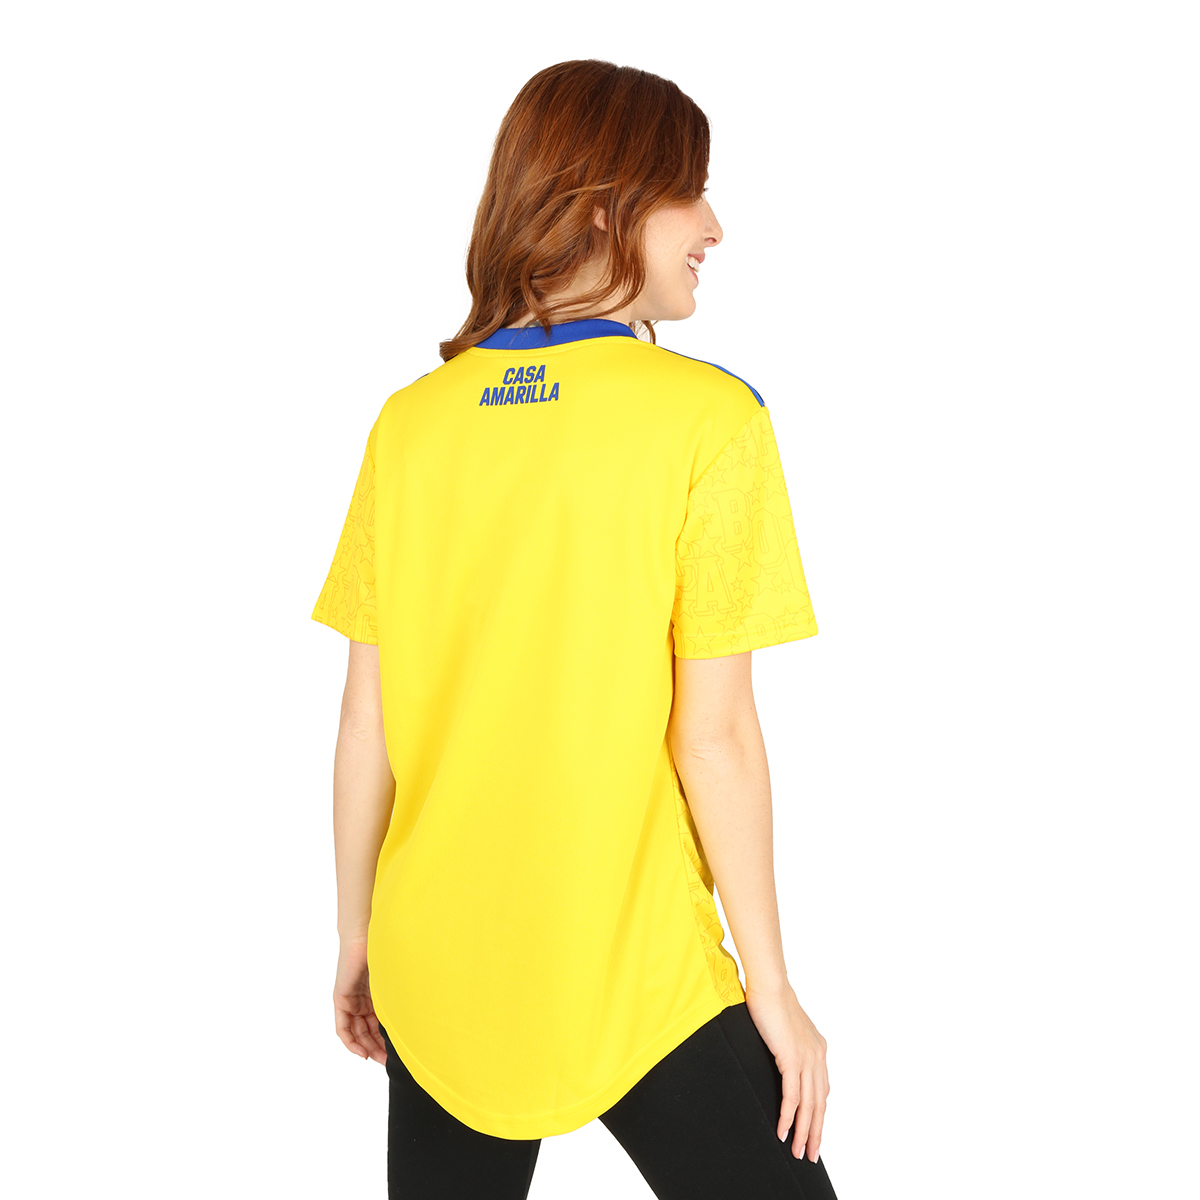 Camiseta adidas Boca Juniors Tercera,  image number null